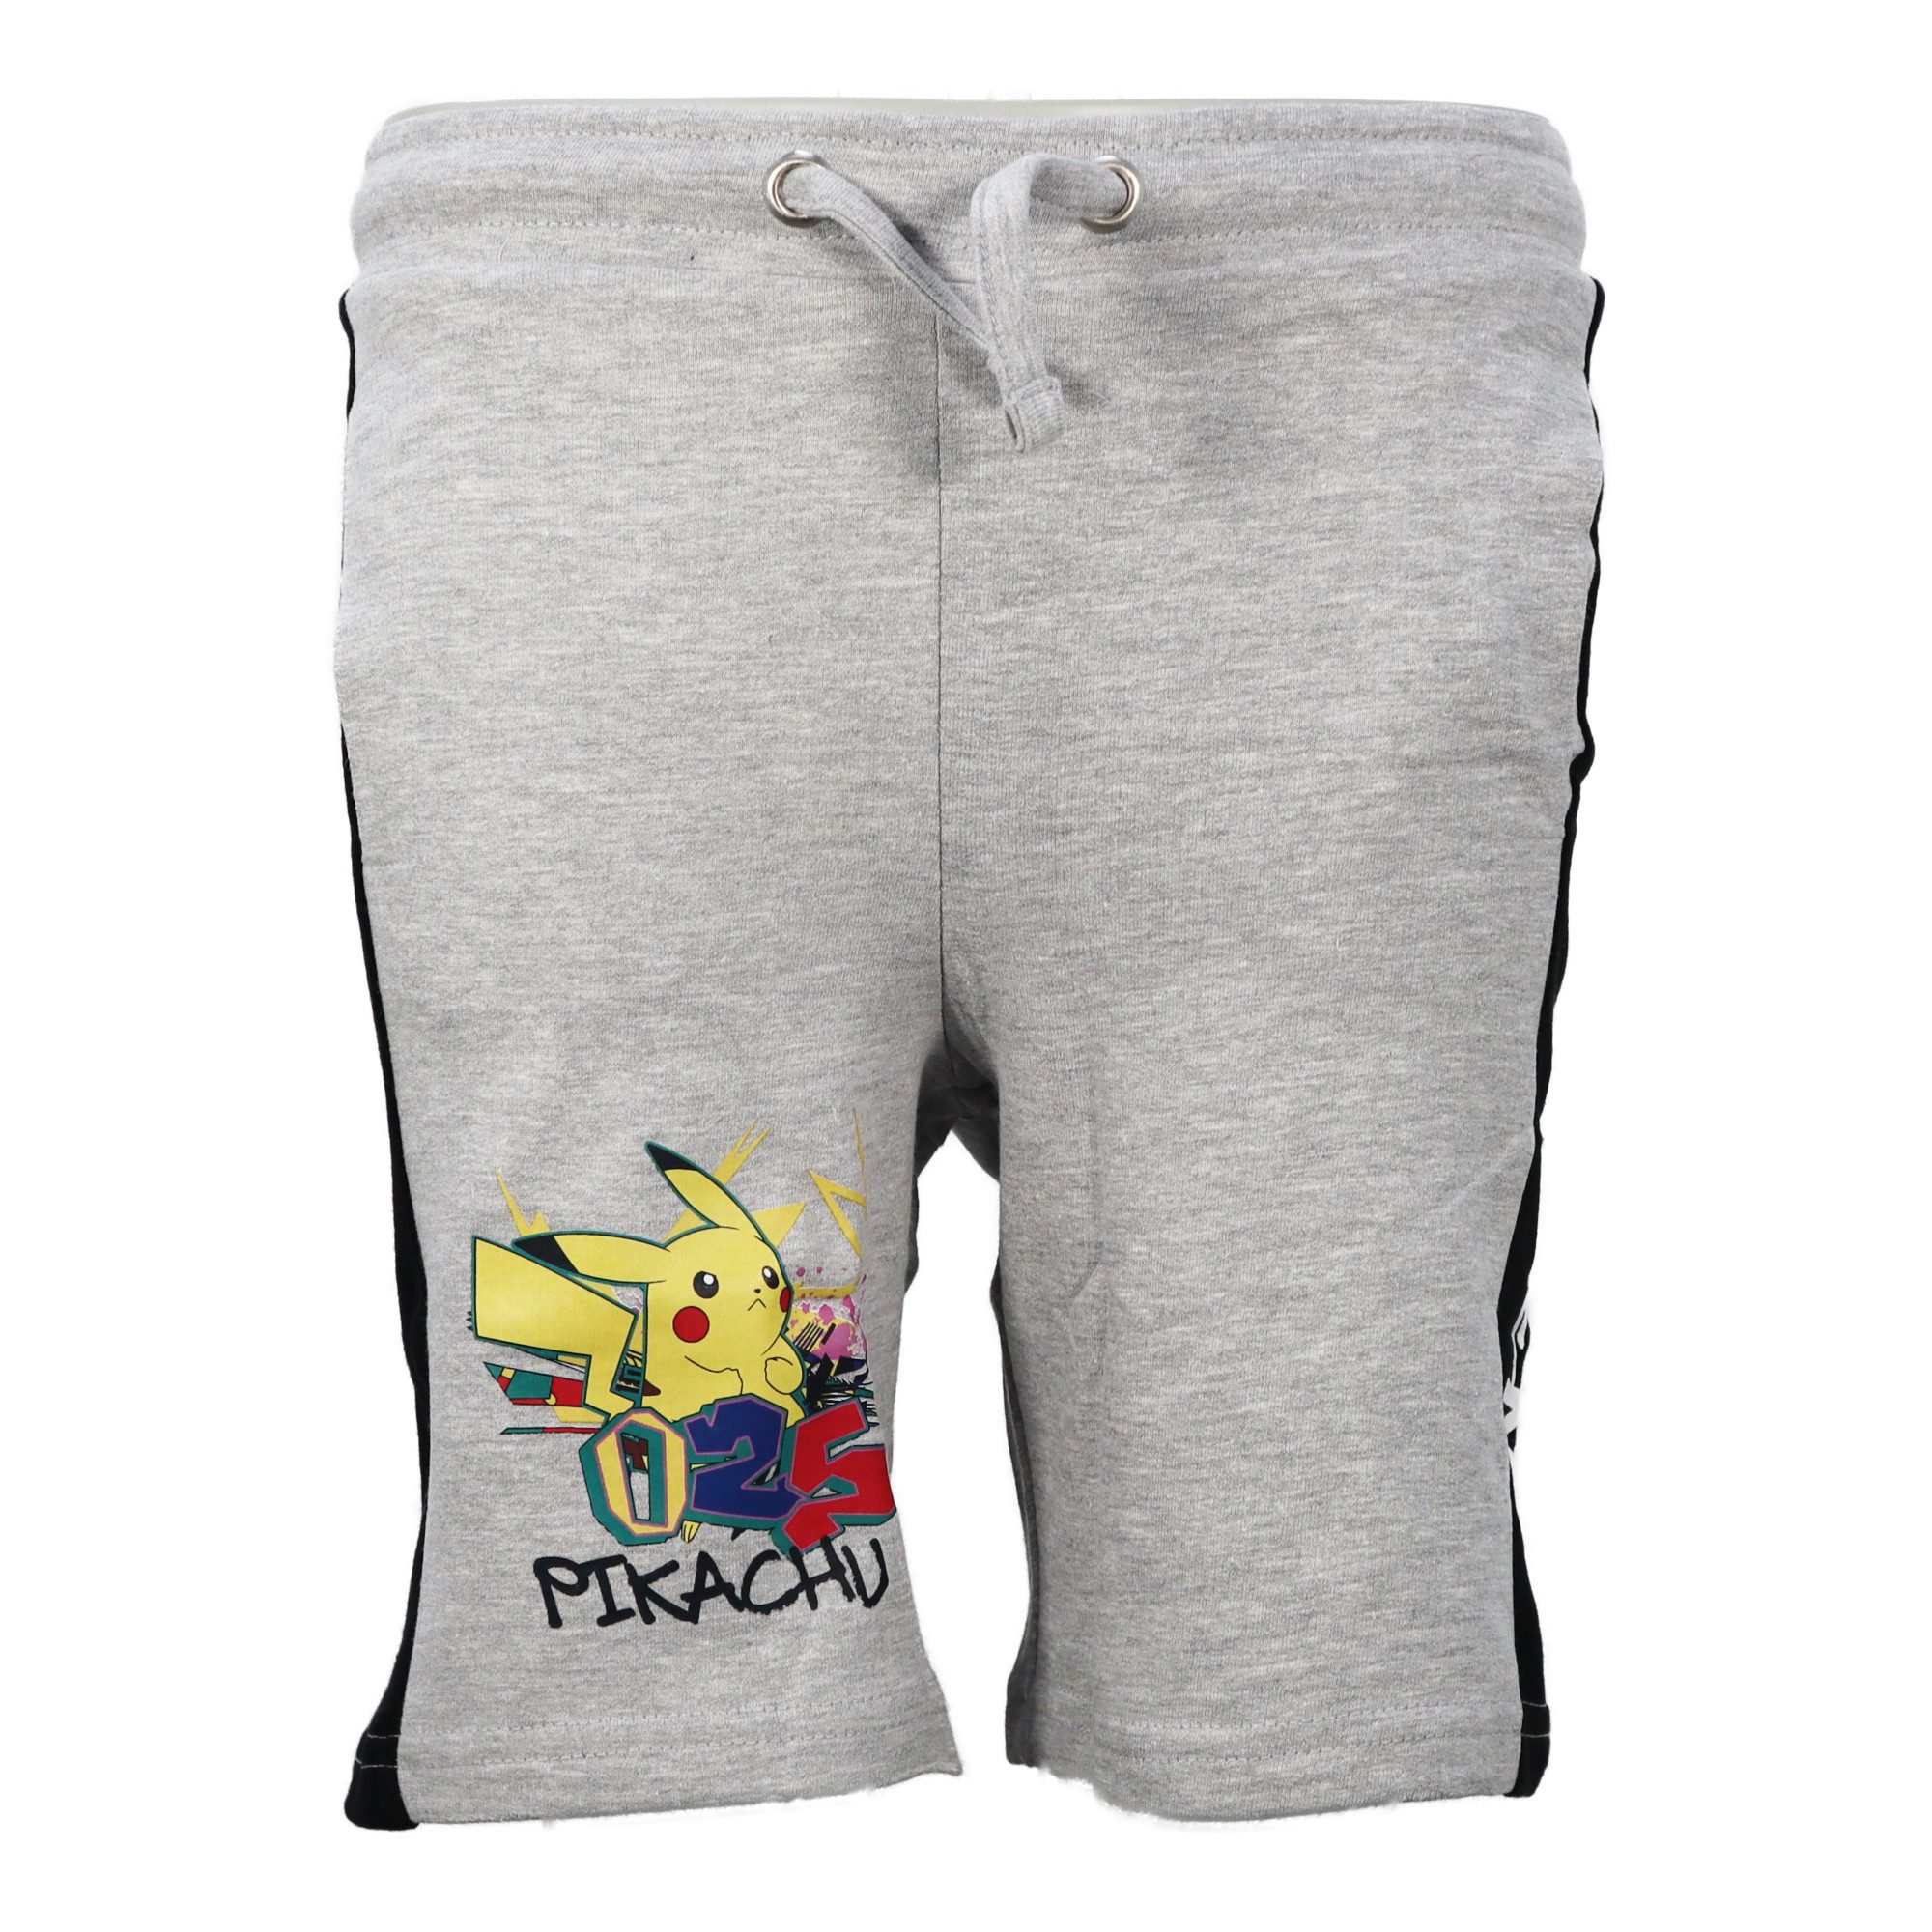 POKÉMON Shorts Pokemon Pikachu Jungen Shorts Bermudas Gr. 140 bis 176